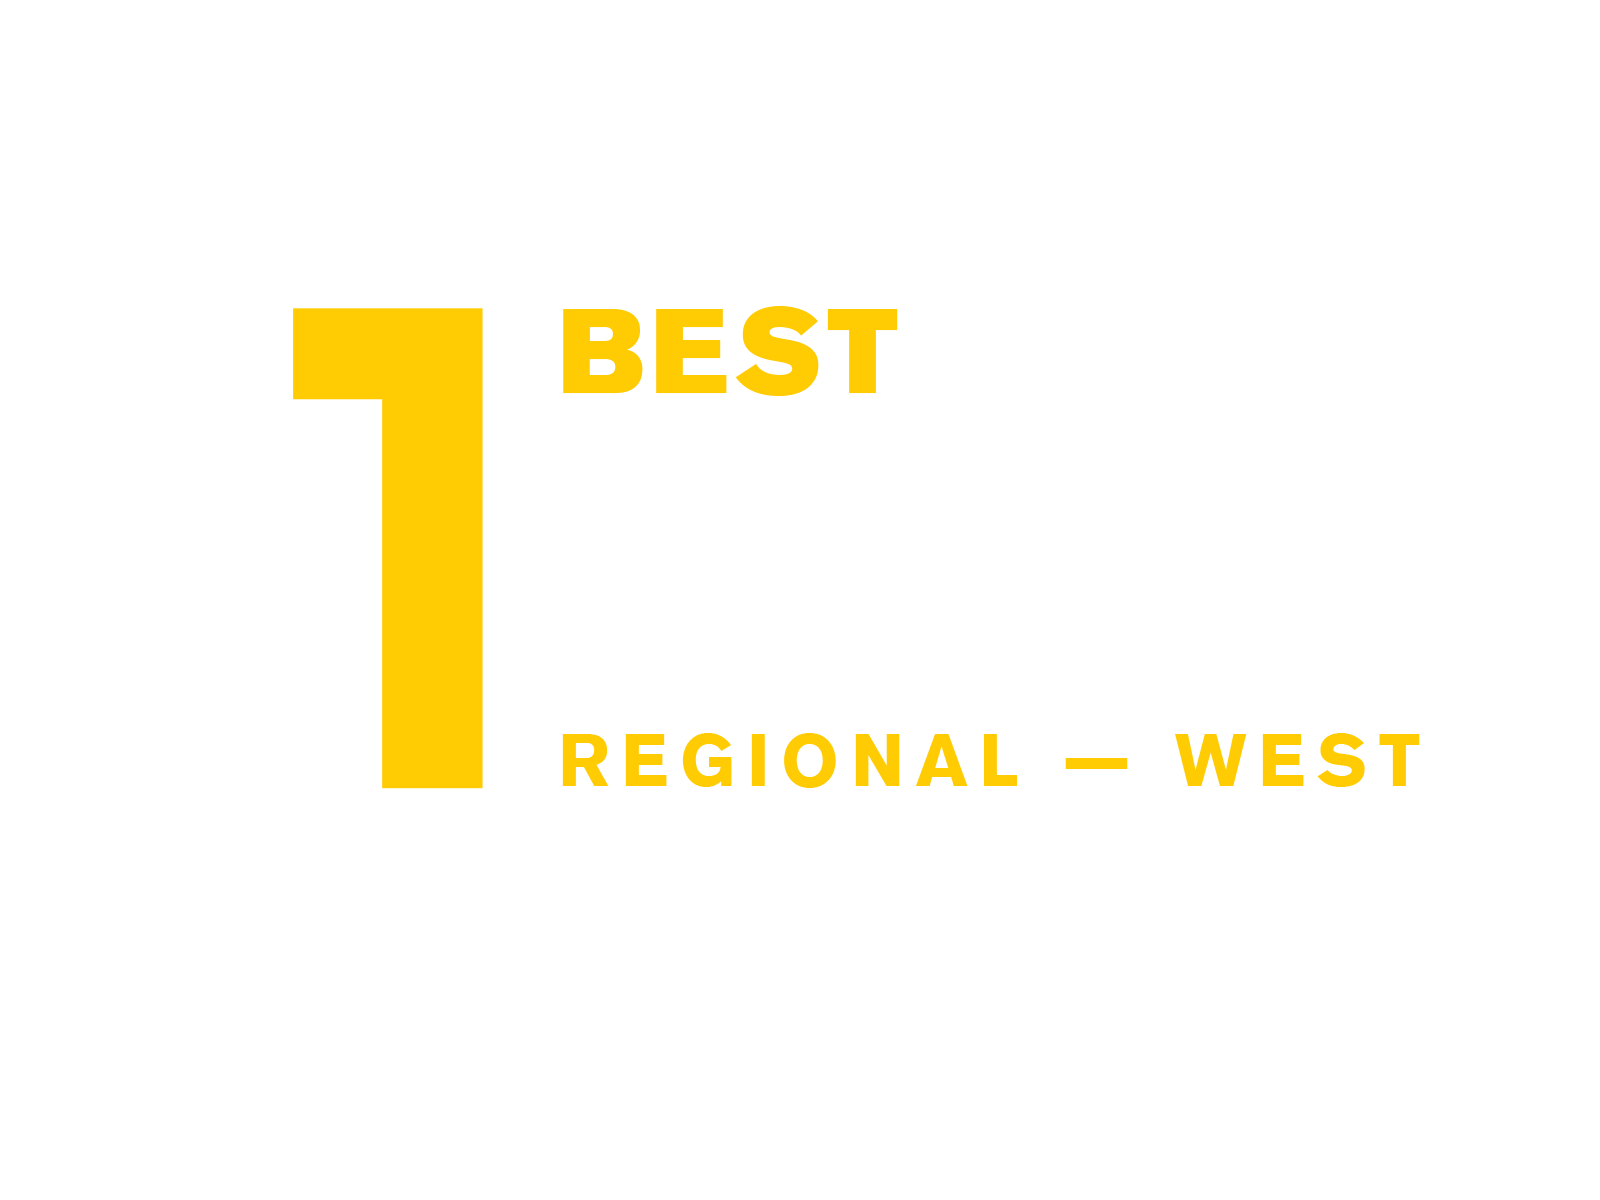 #1 - Best Regional Colleges, Prescott Campus